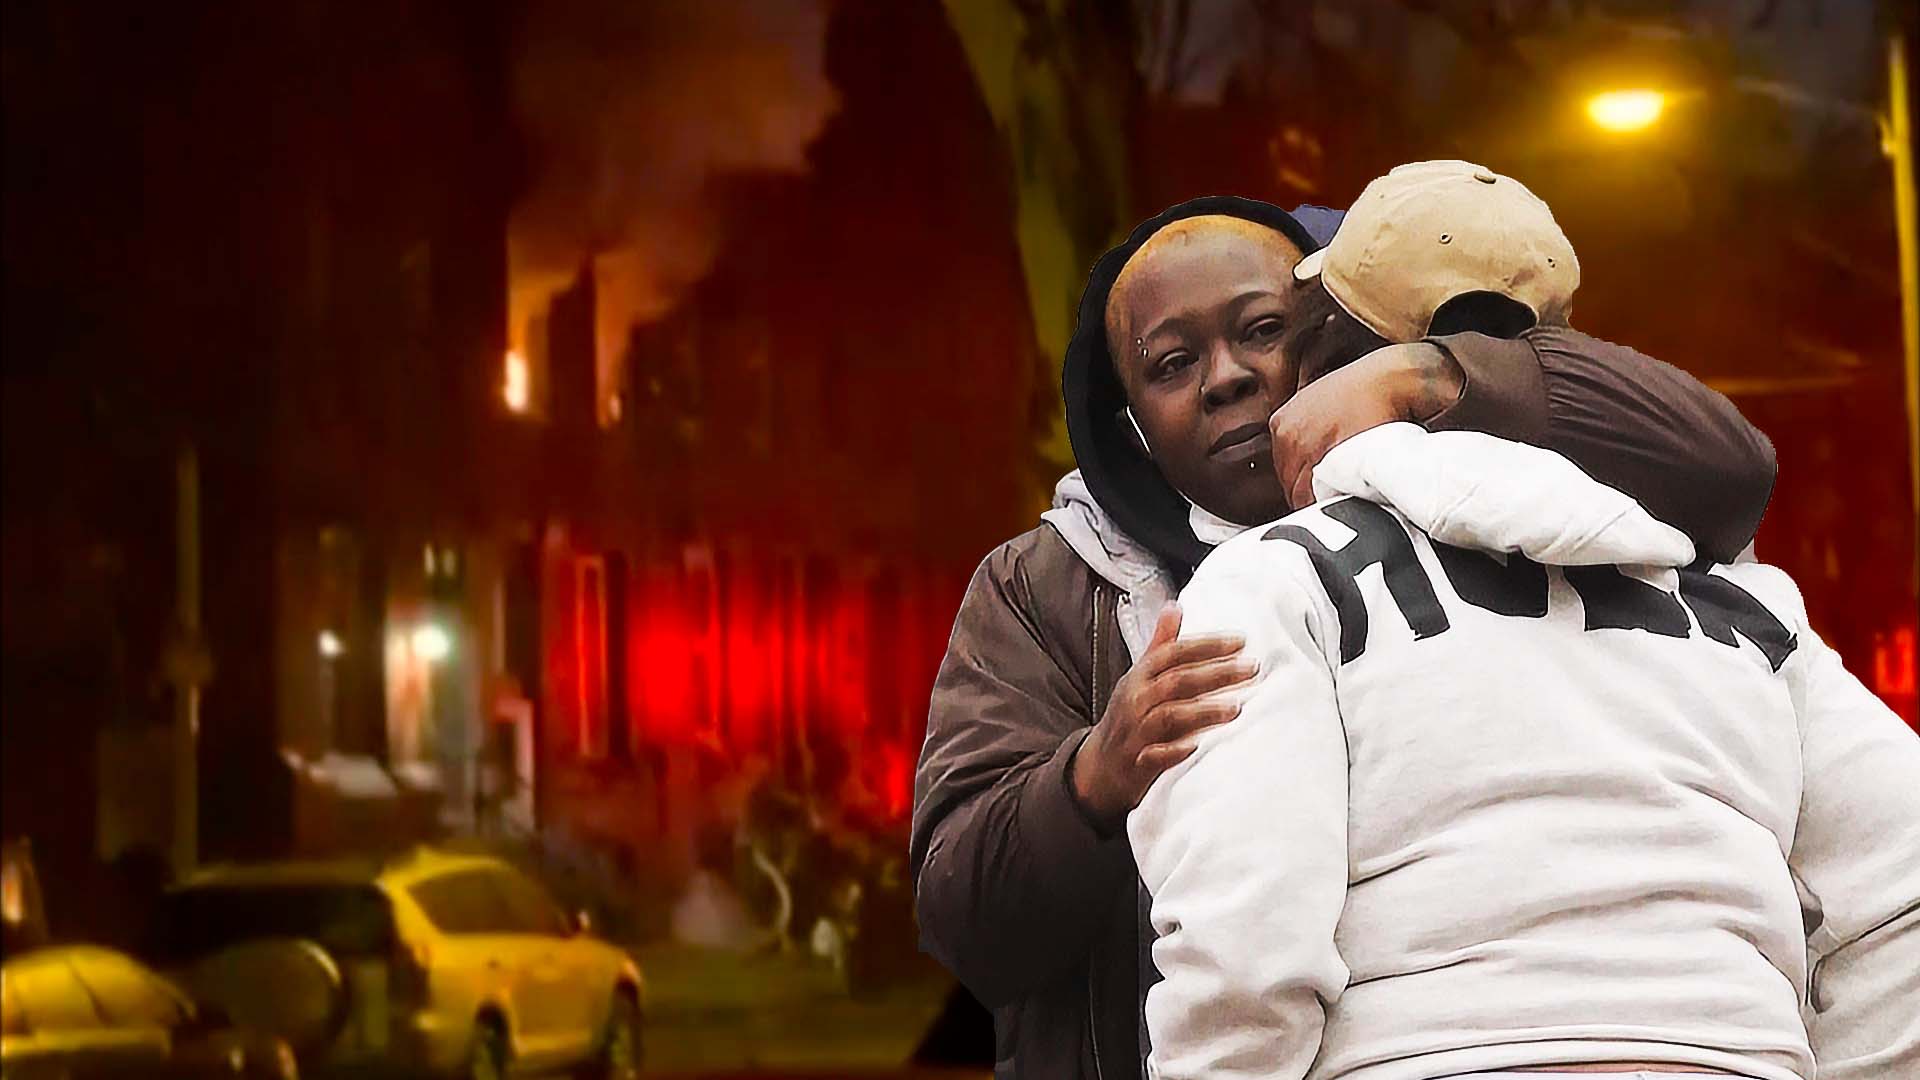 13 жертв: страшный пожар в жилом доме в Филадельфии оставил много вопросов